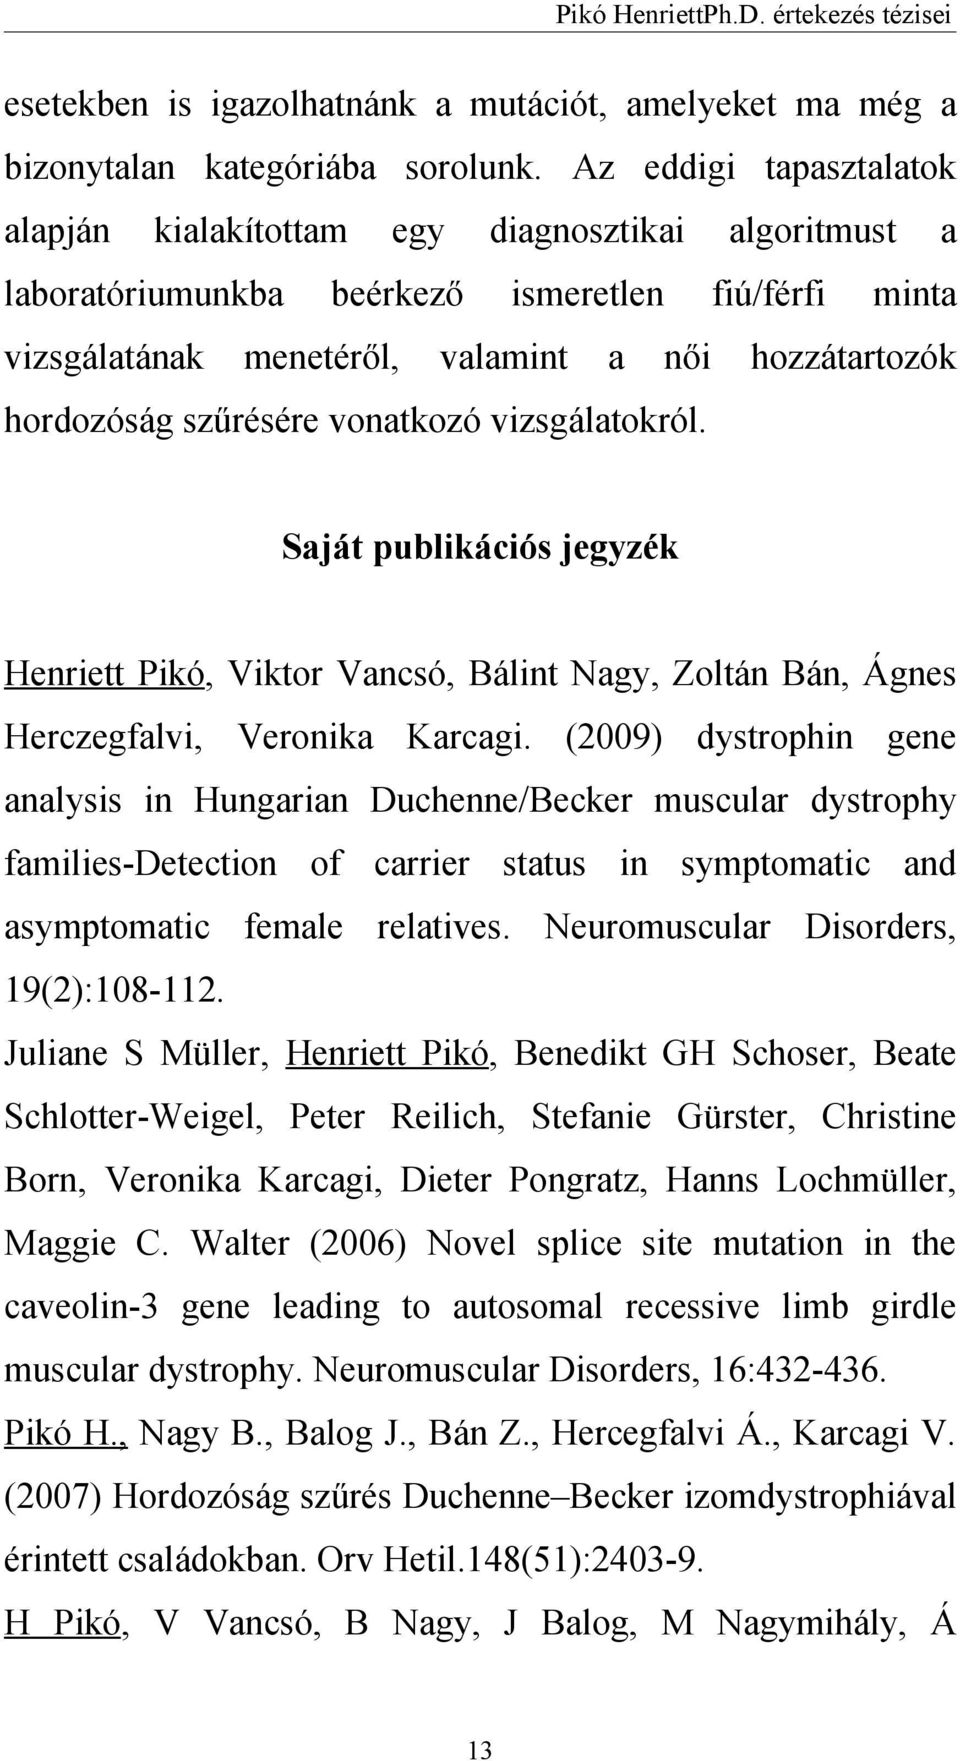 szűrésére vonatkozó vizsgálatokról. Saját publikációs jegyzék Henriett Pikó, Viktor Vancsó, Bálint Nagy, Zoltán Bán, Ágnes Herczegfalvi, Veronika Karcagi.